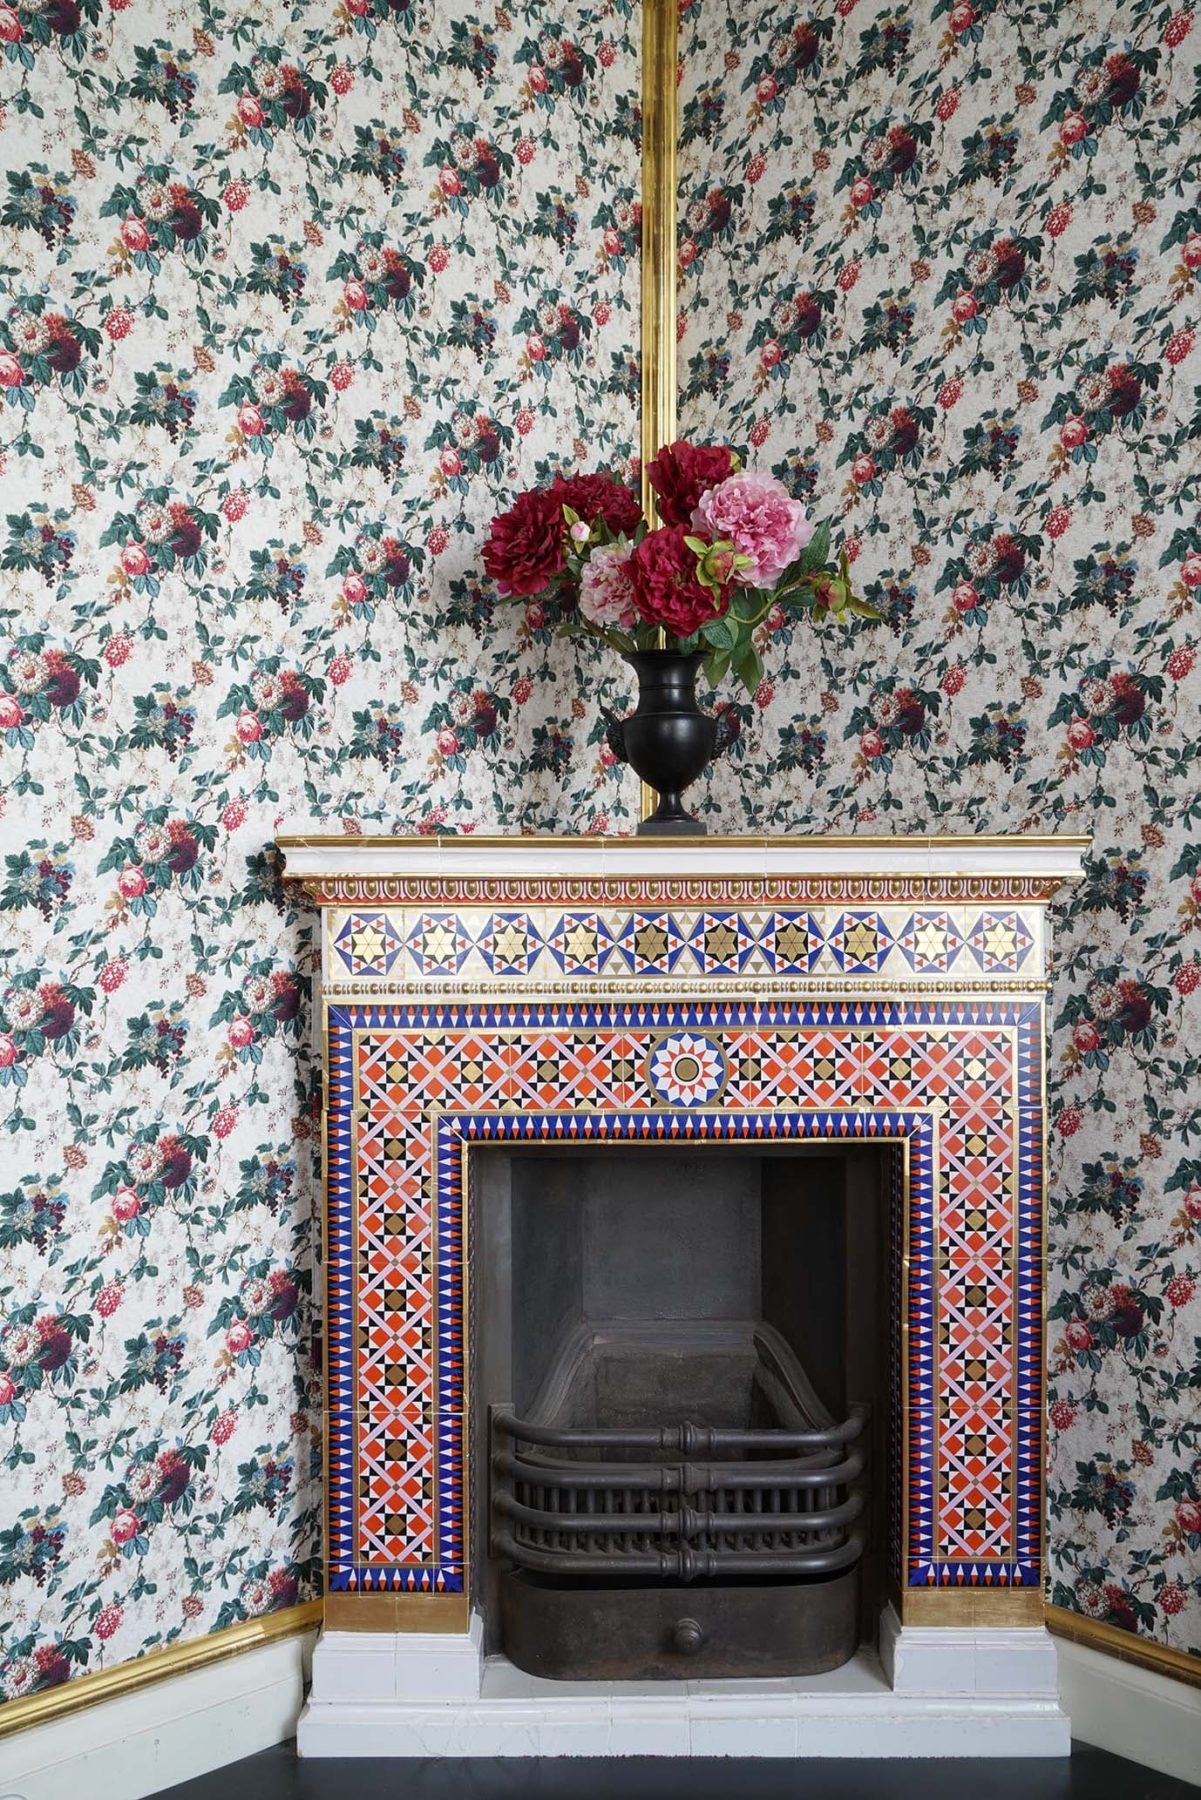 Ein Kamin, reich und bunt verziert, eine Tapete mit Blumenmuster an der Wand, auf dem Kamin steht eine Blumenstrauss in einer Vase